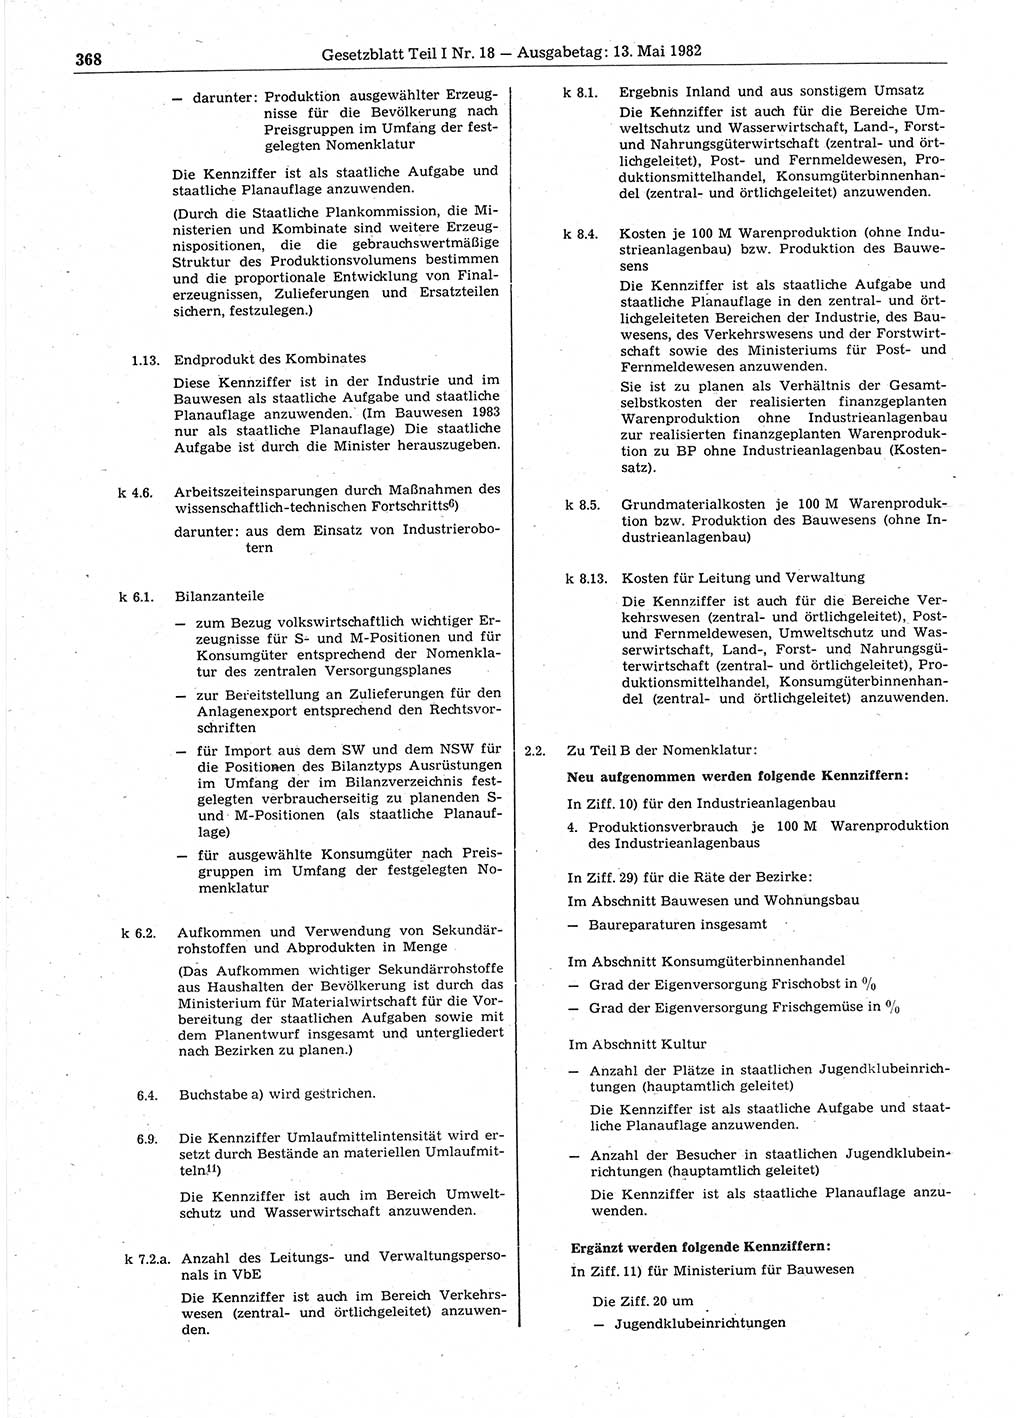 Gesetzblatt (GBl.) der Deutschen Demokratischen Republik (DDR) Teil Ⅰ 1982, Seite 368 (GBl. DDR Ⅰ 1982, S. 368)